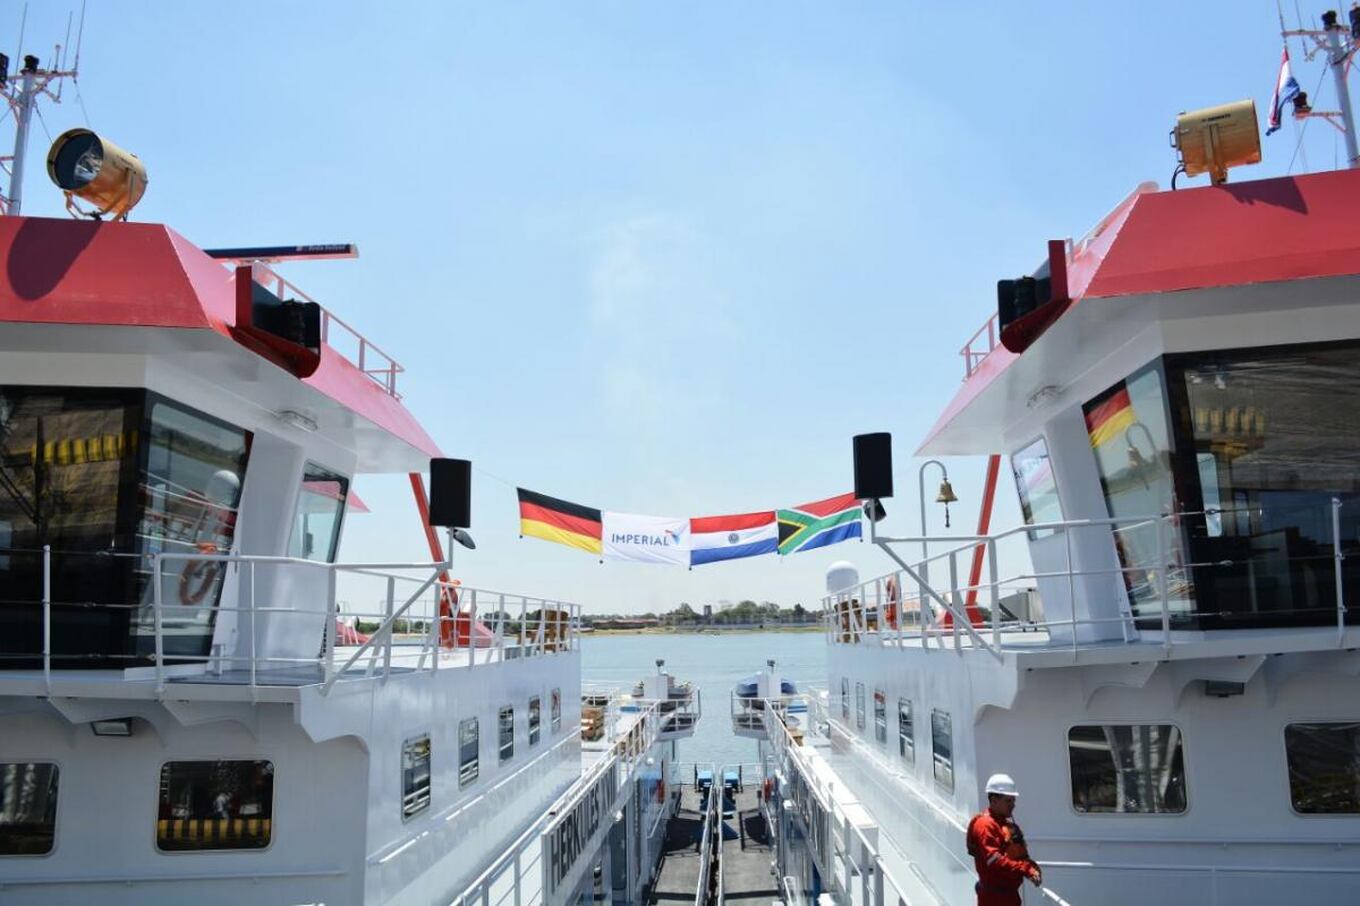 Las banderas de Alemania, Paraguay y Sudáfrica, donde opera la empresa ya flamean ante el inicio de operaciones de Imperial Shipping.
Foto: Fernando Riveros.